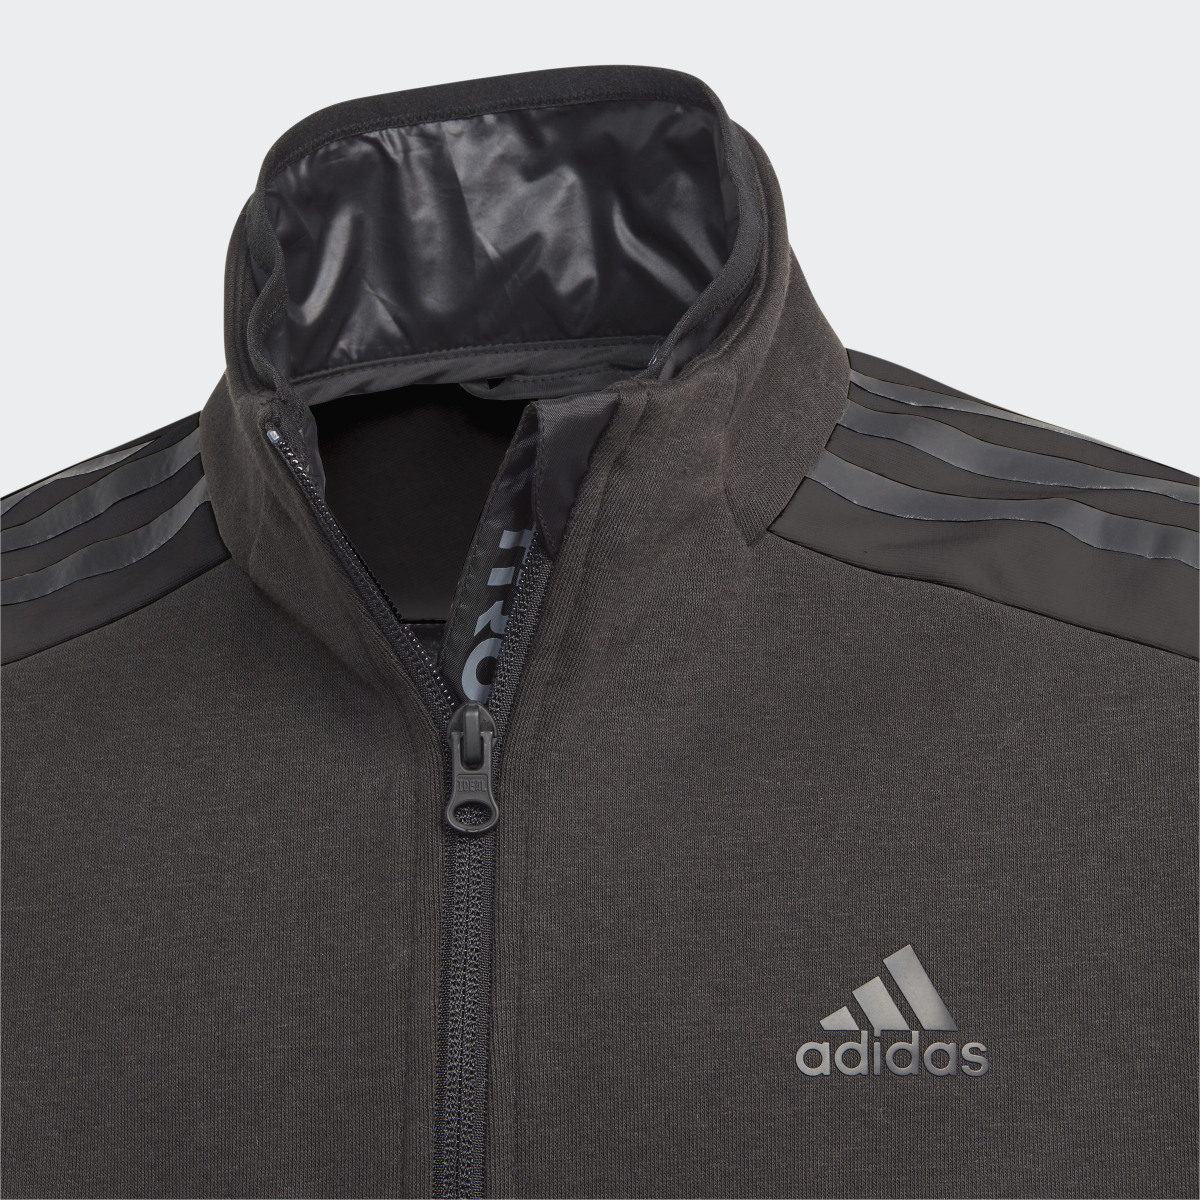 Adidas Tiro Suit Up Knit Track Jacket. 4